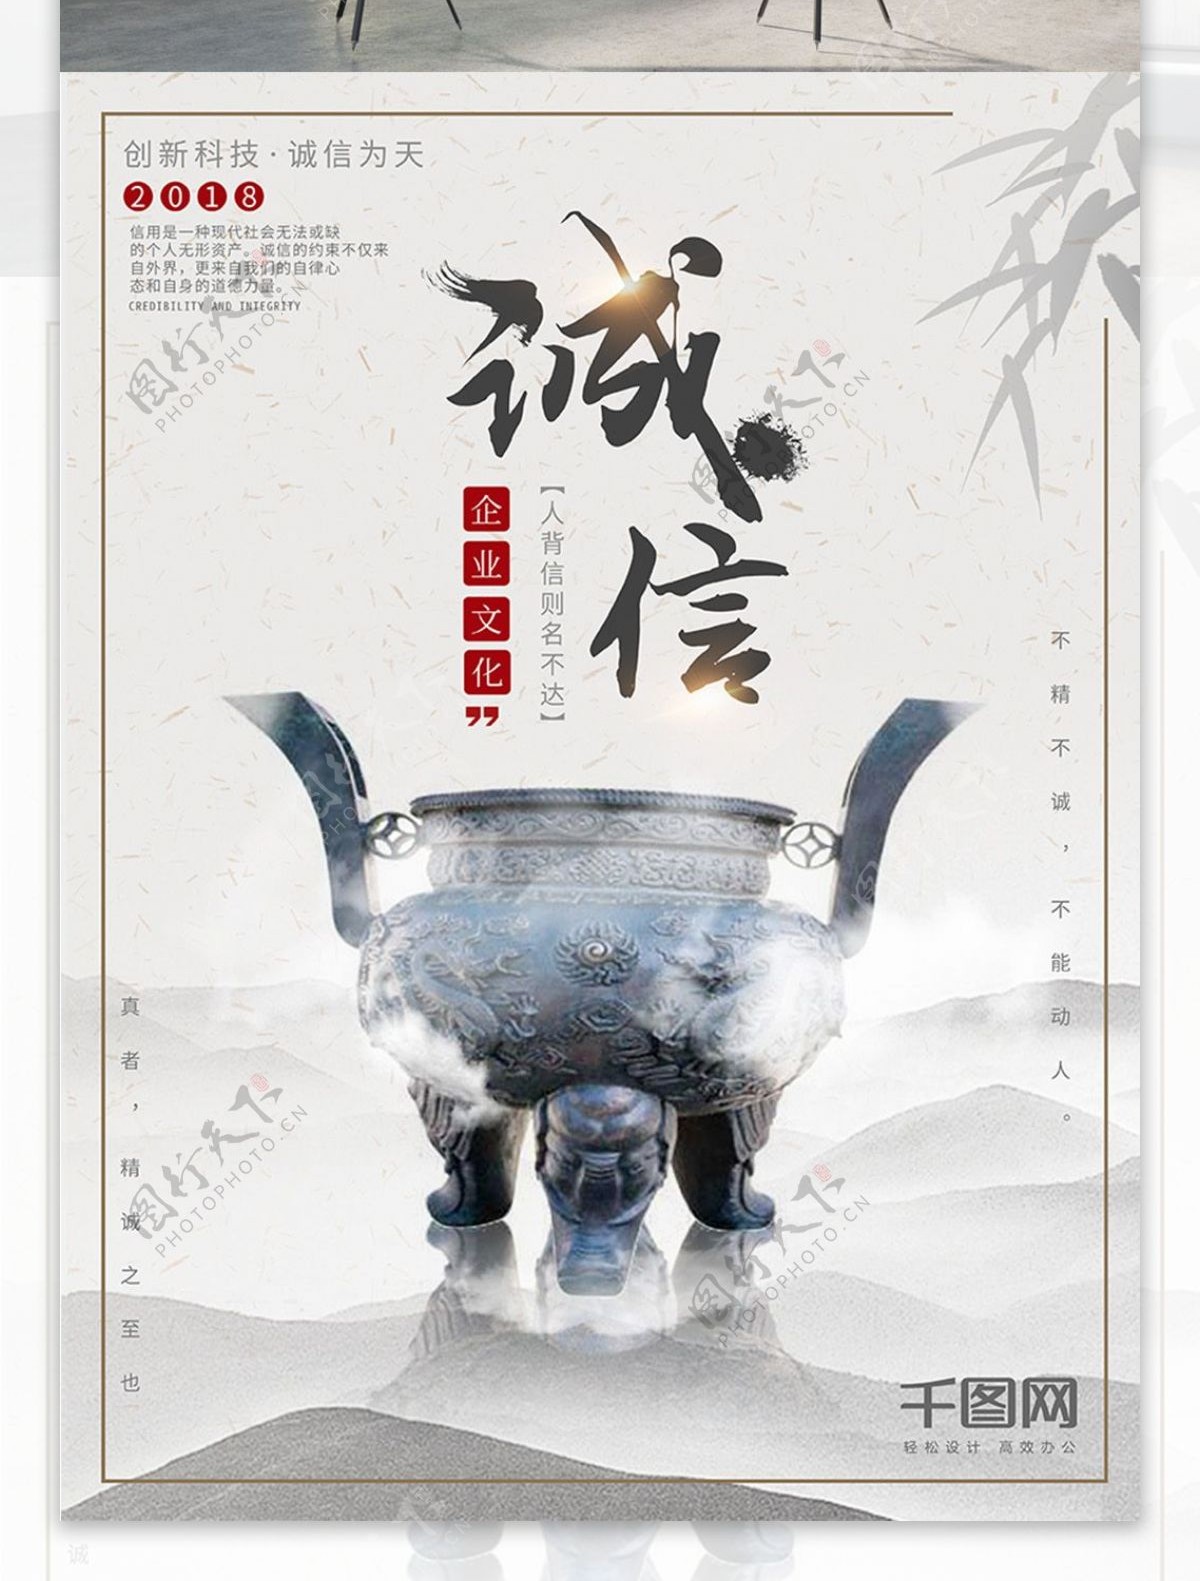 中国风古风大气诚信企业文化公司宣传海报